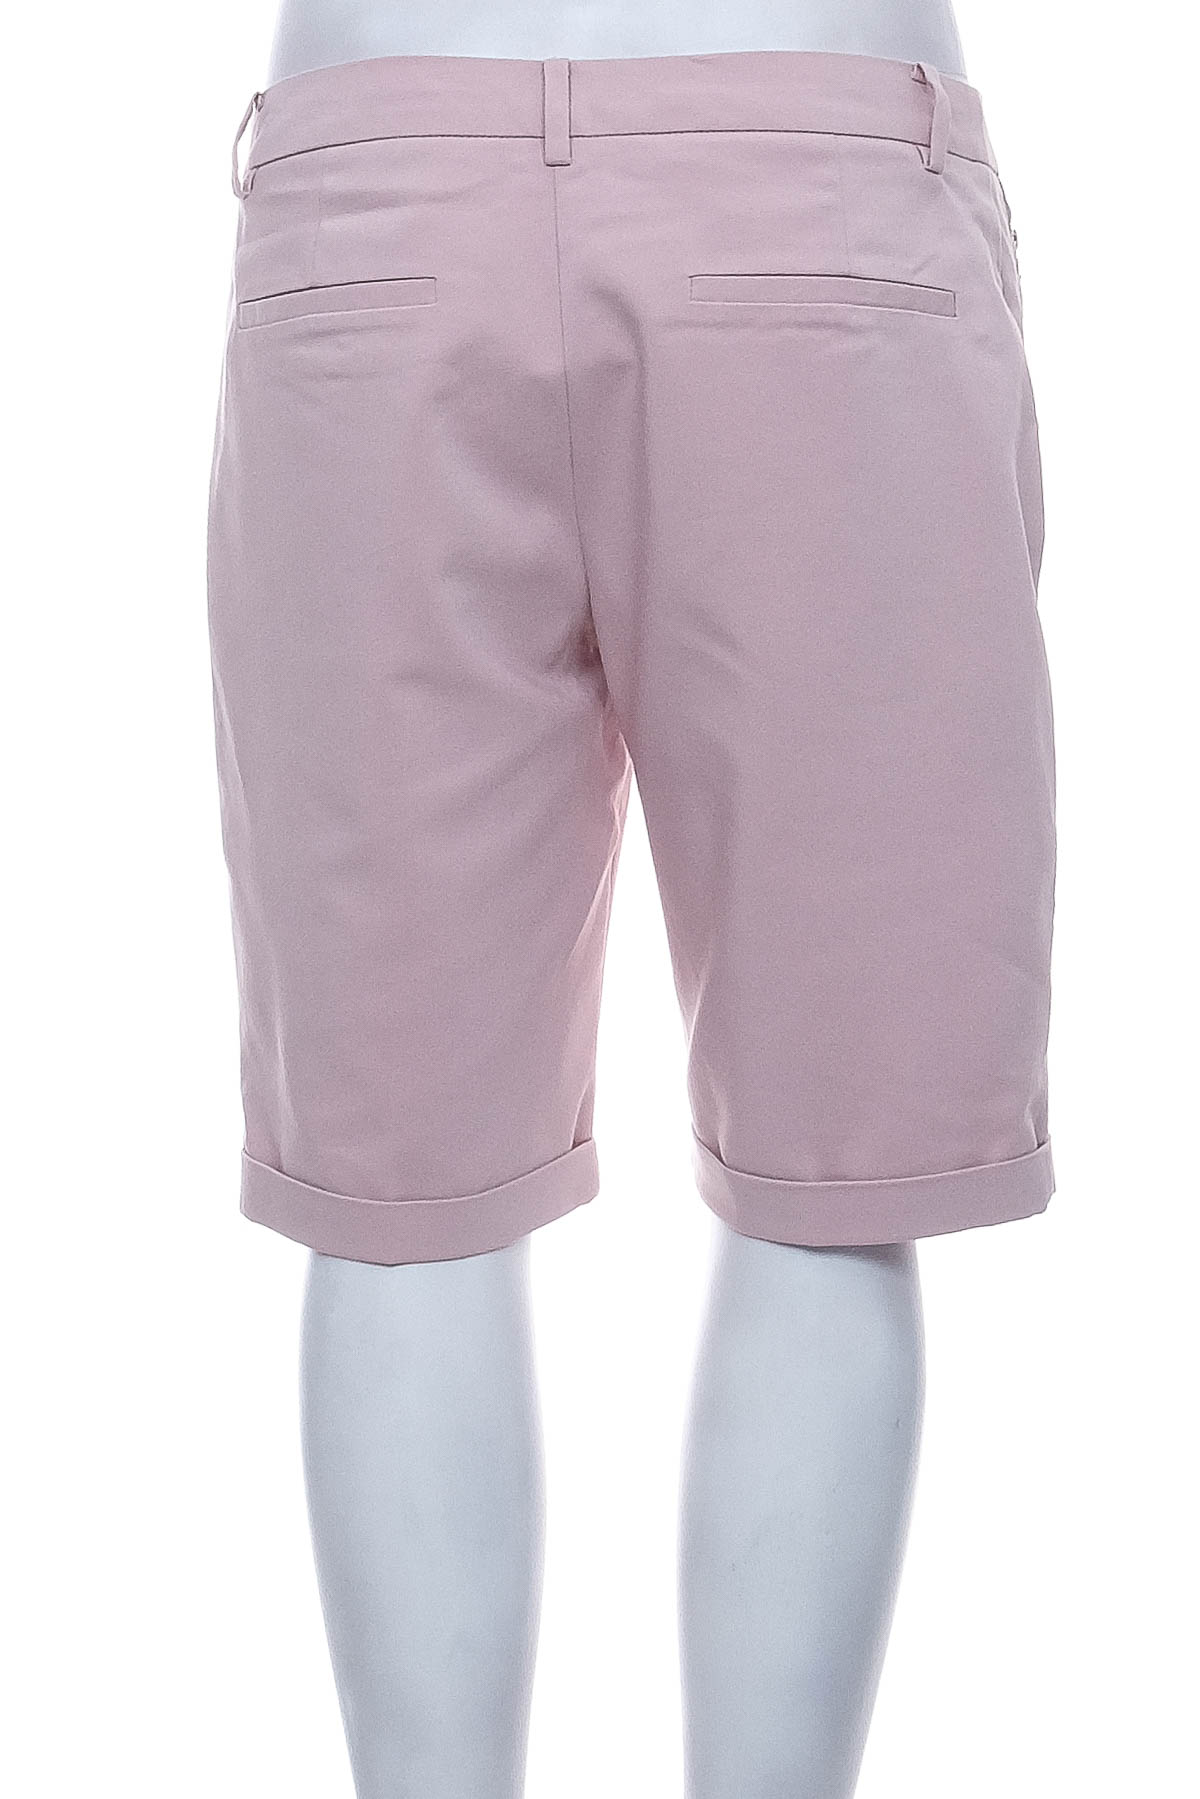 Female shorts - MOHITO - 1